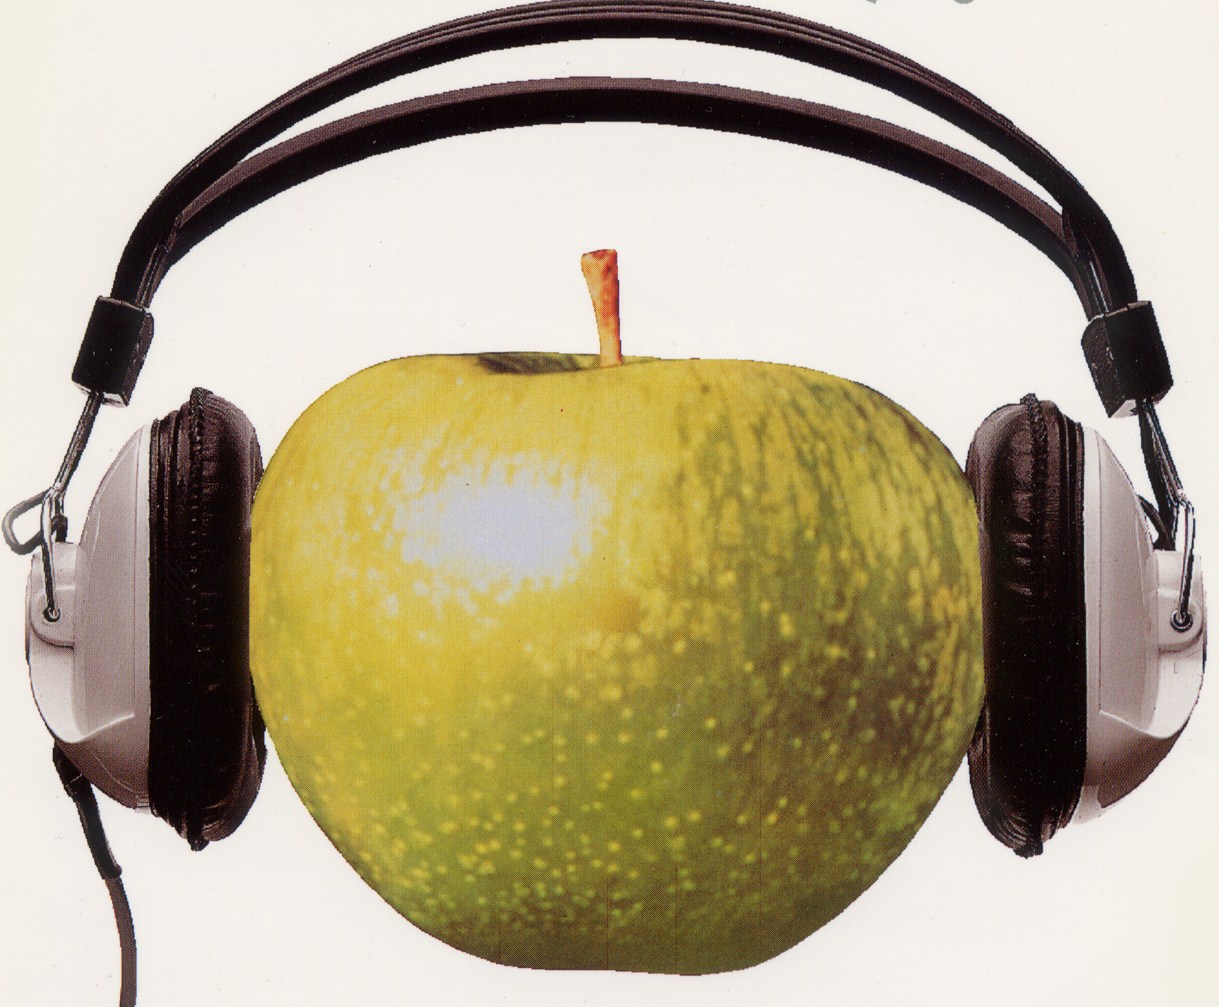 Appleheadphones